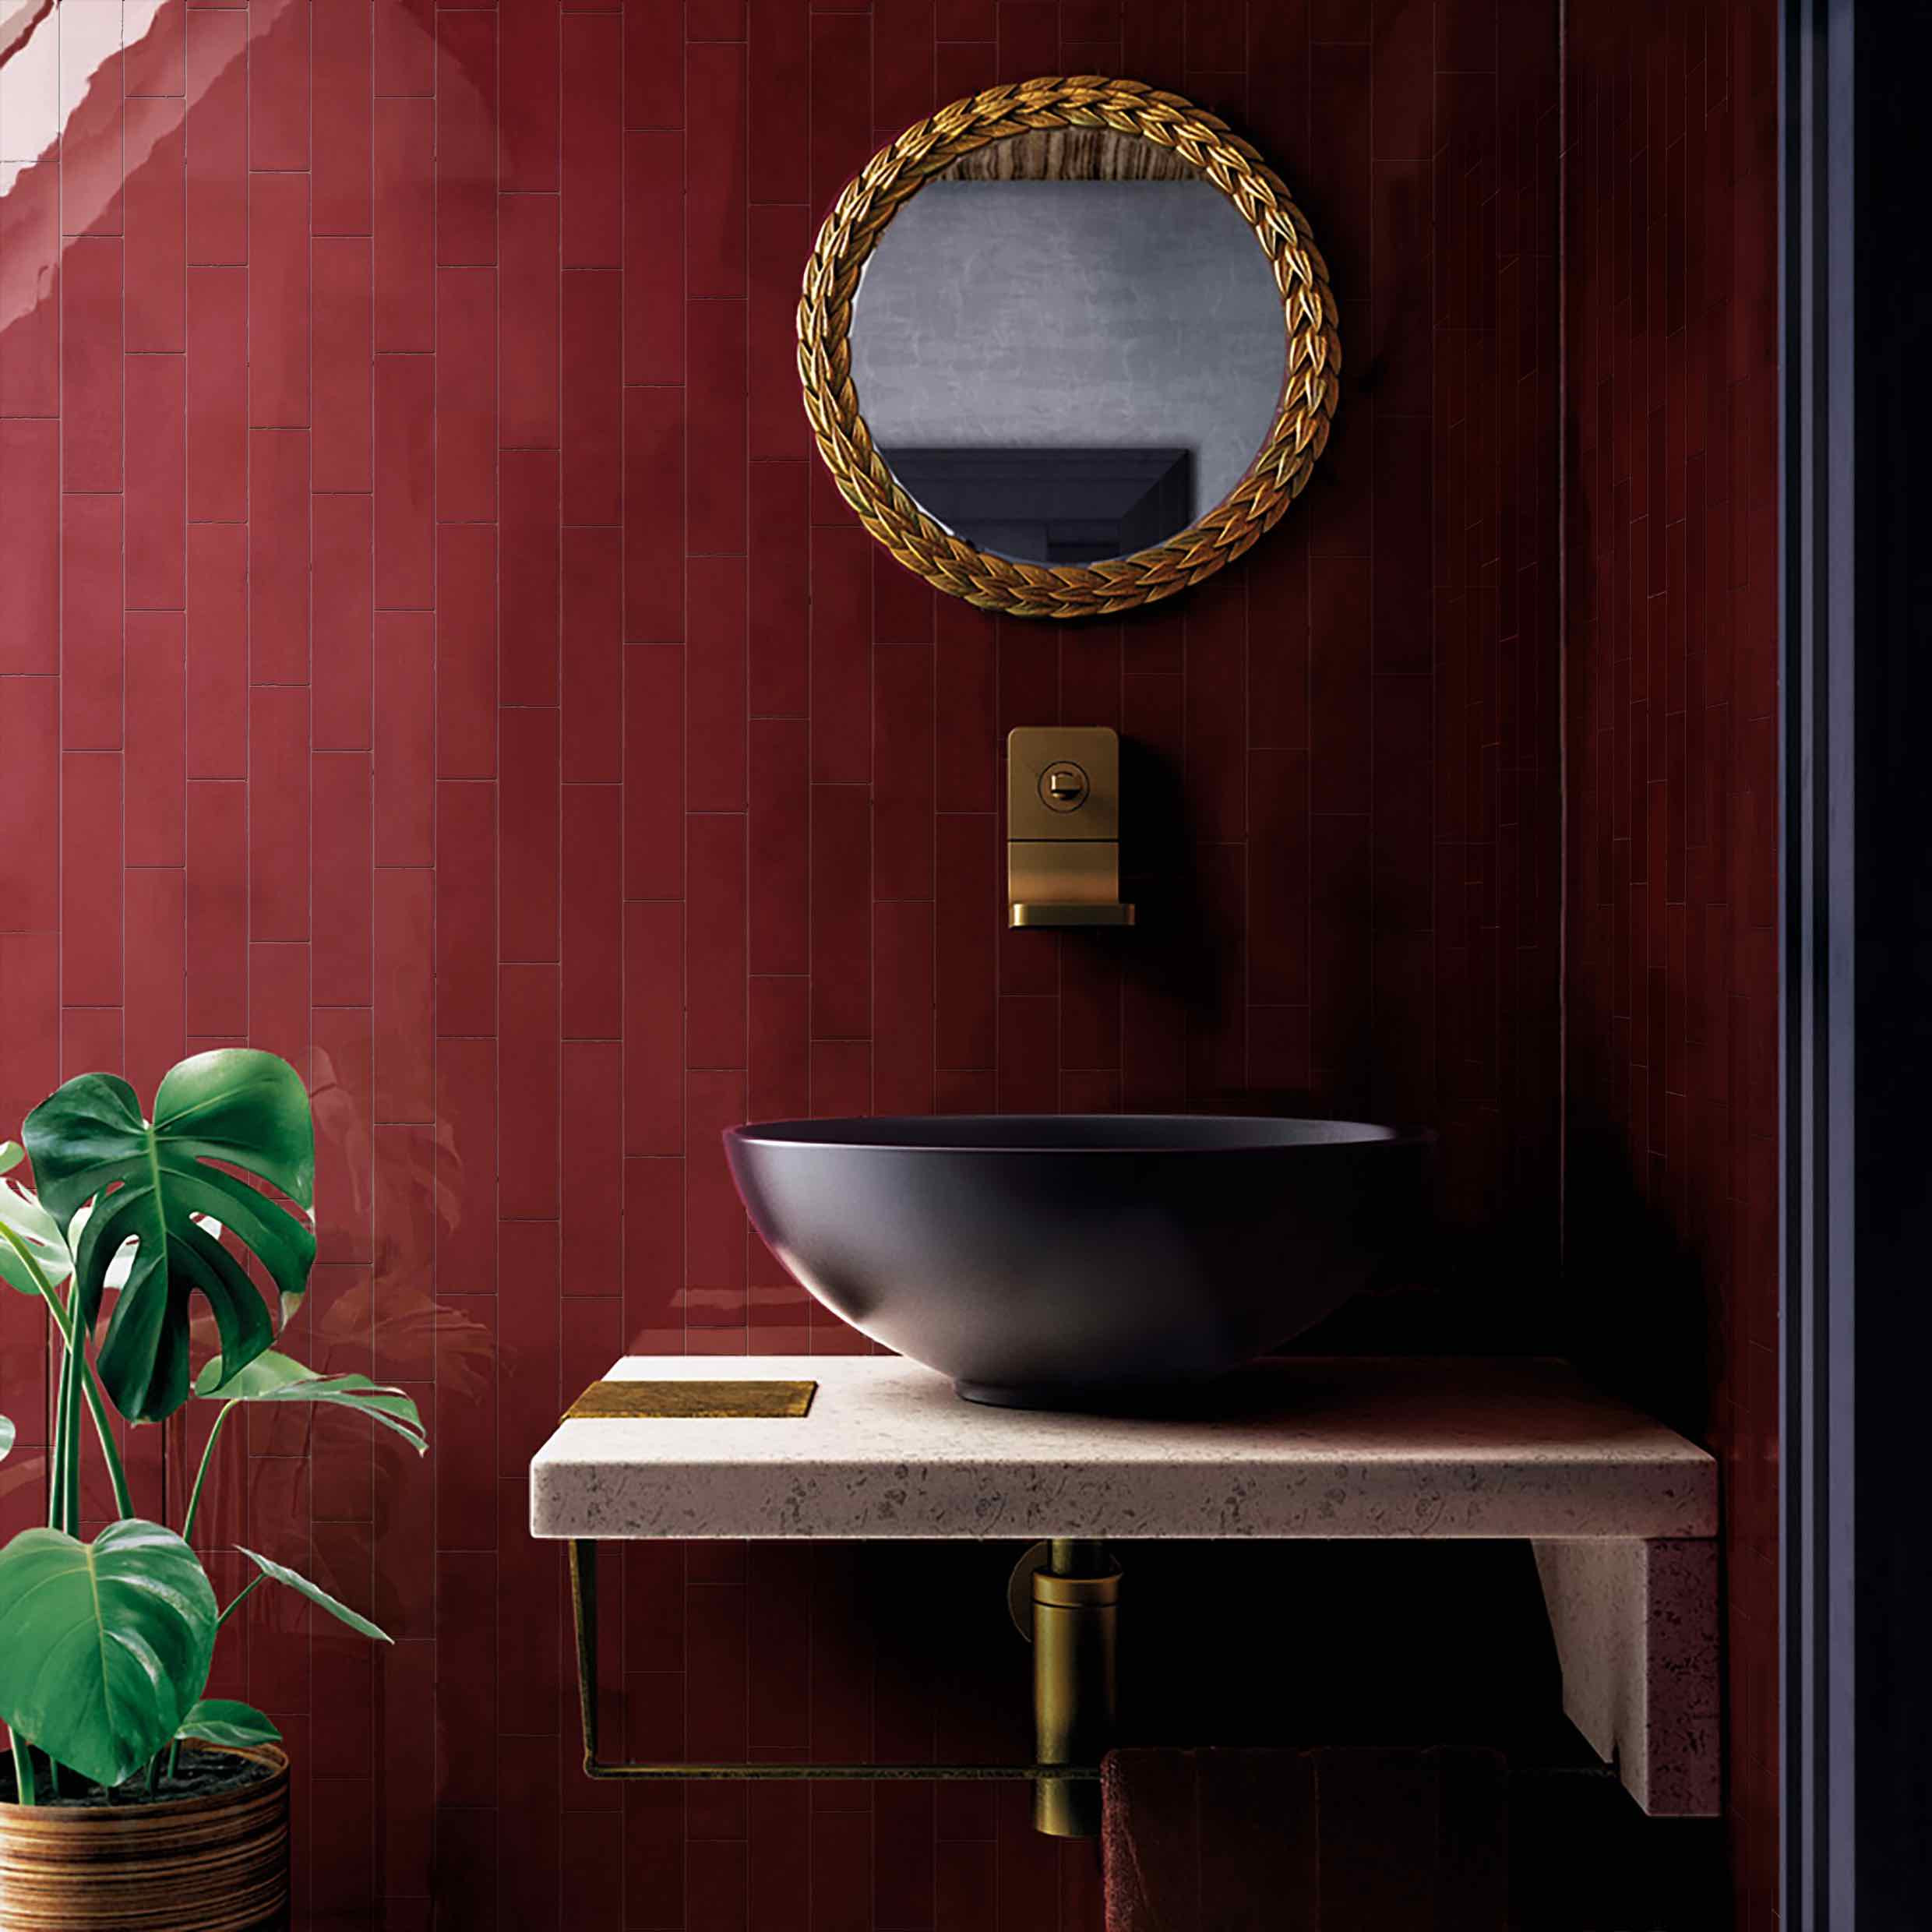 Красная Ванная Комната Дизайн Фото